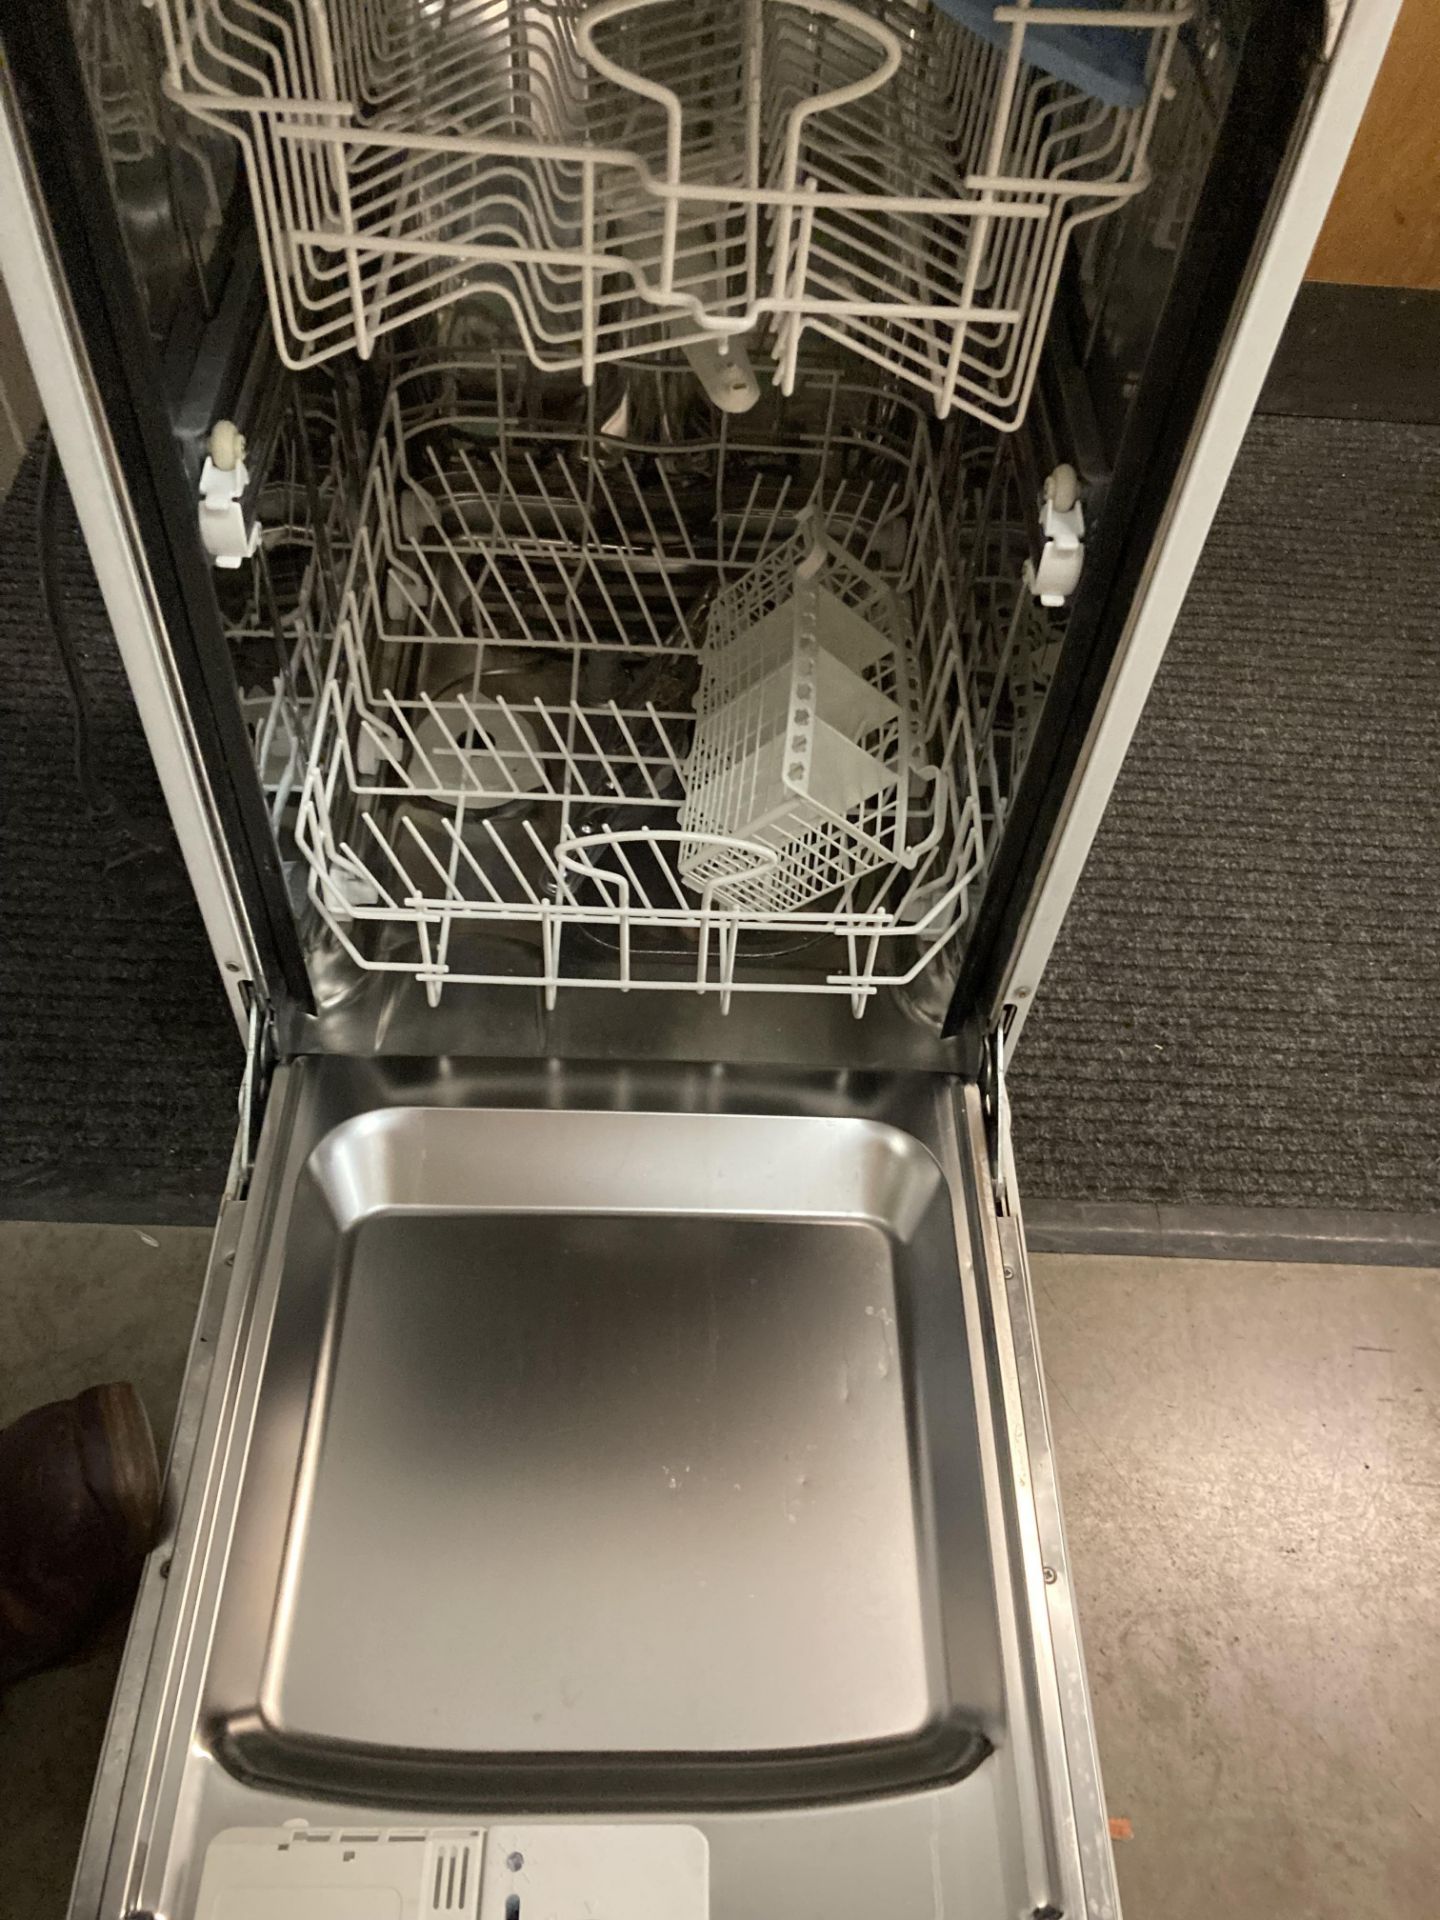 Indesit IDL40 dishwasher (PO) - Image 2 of 2